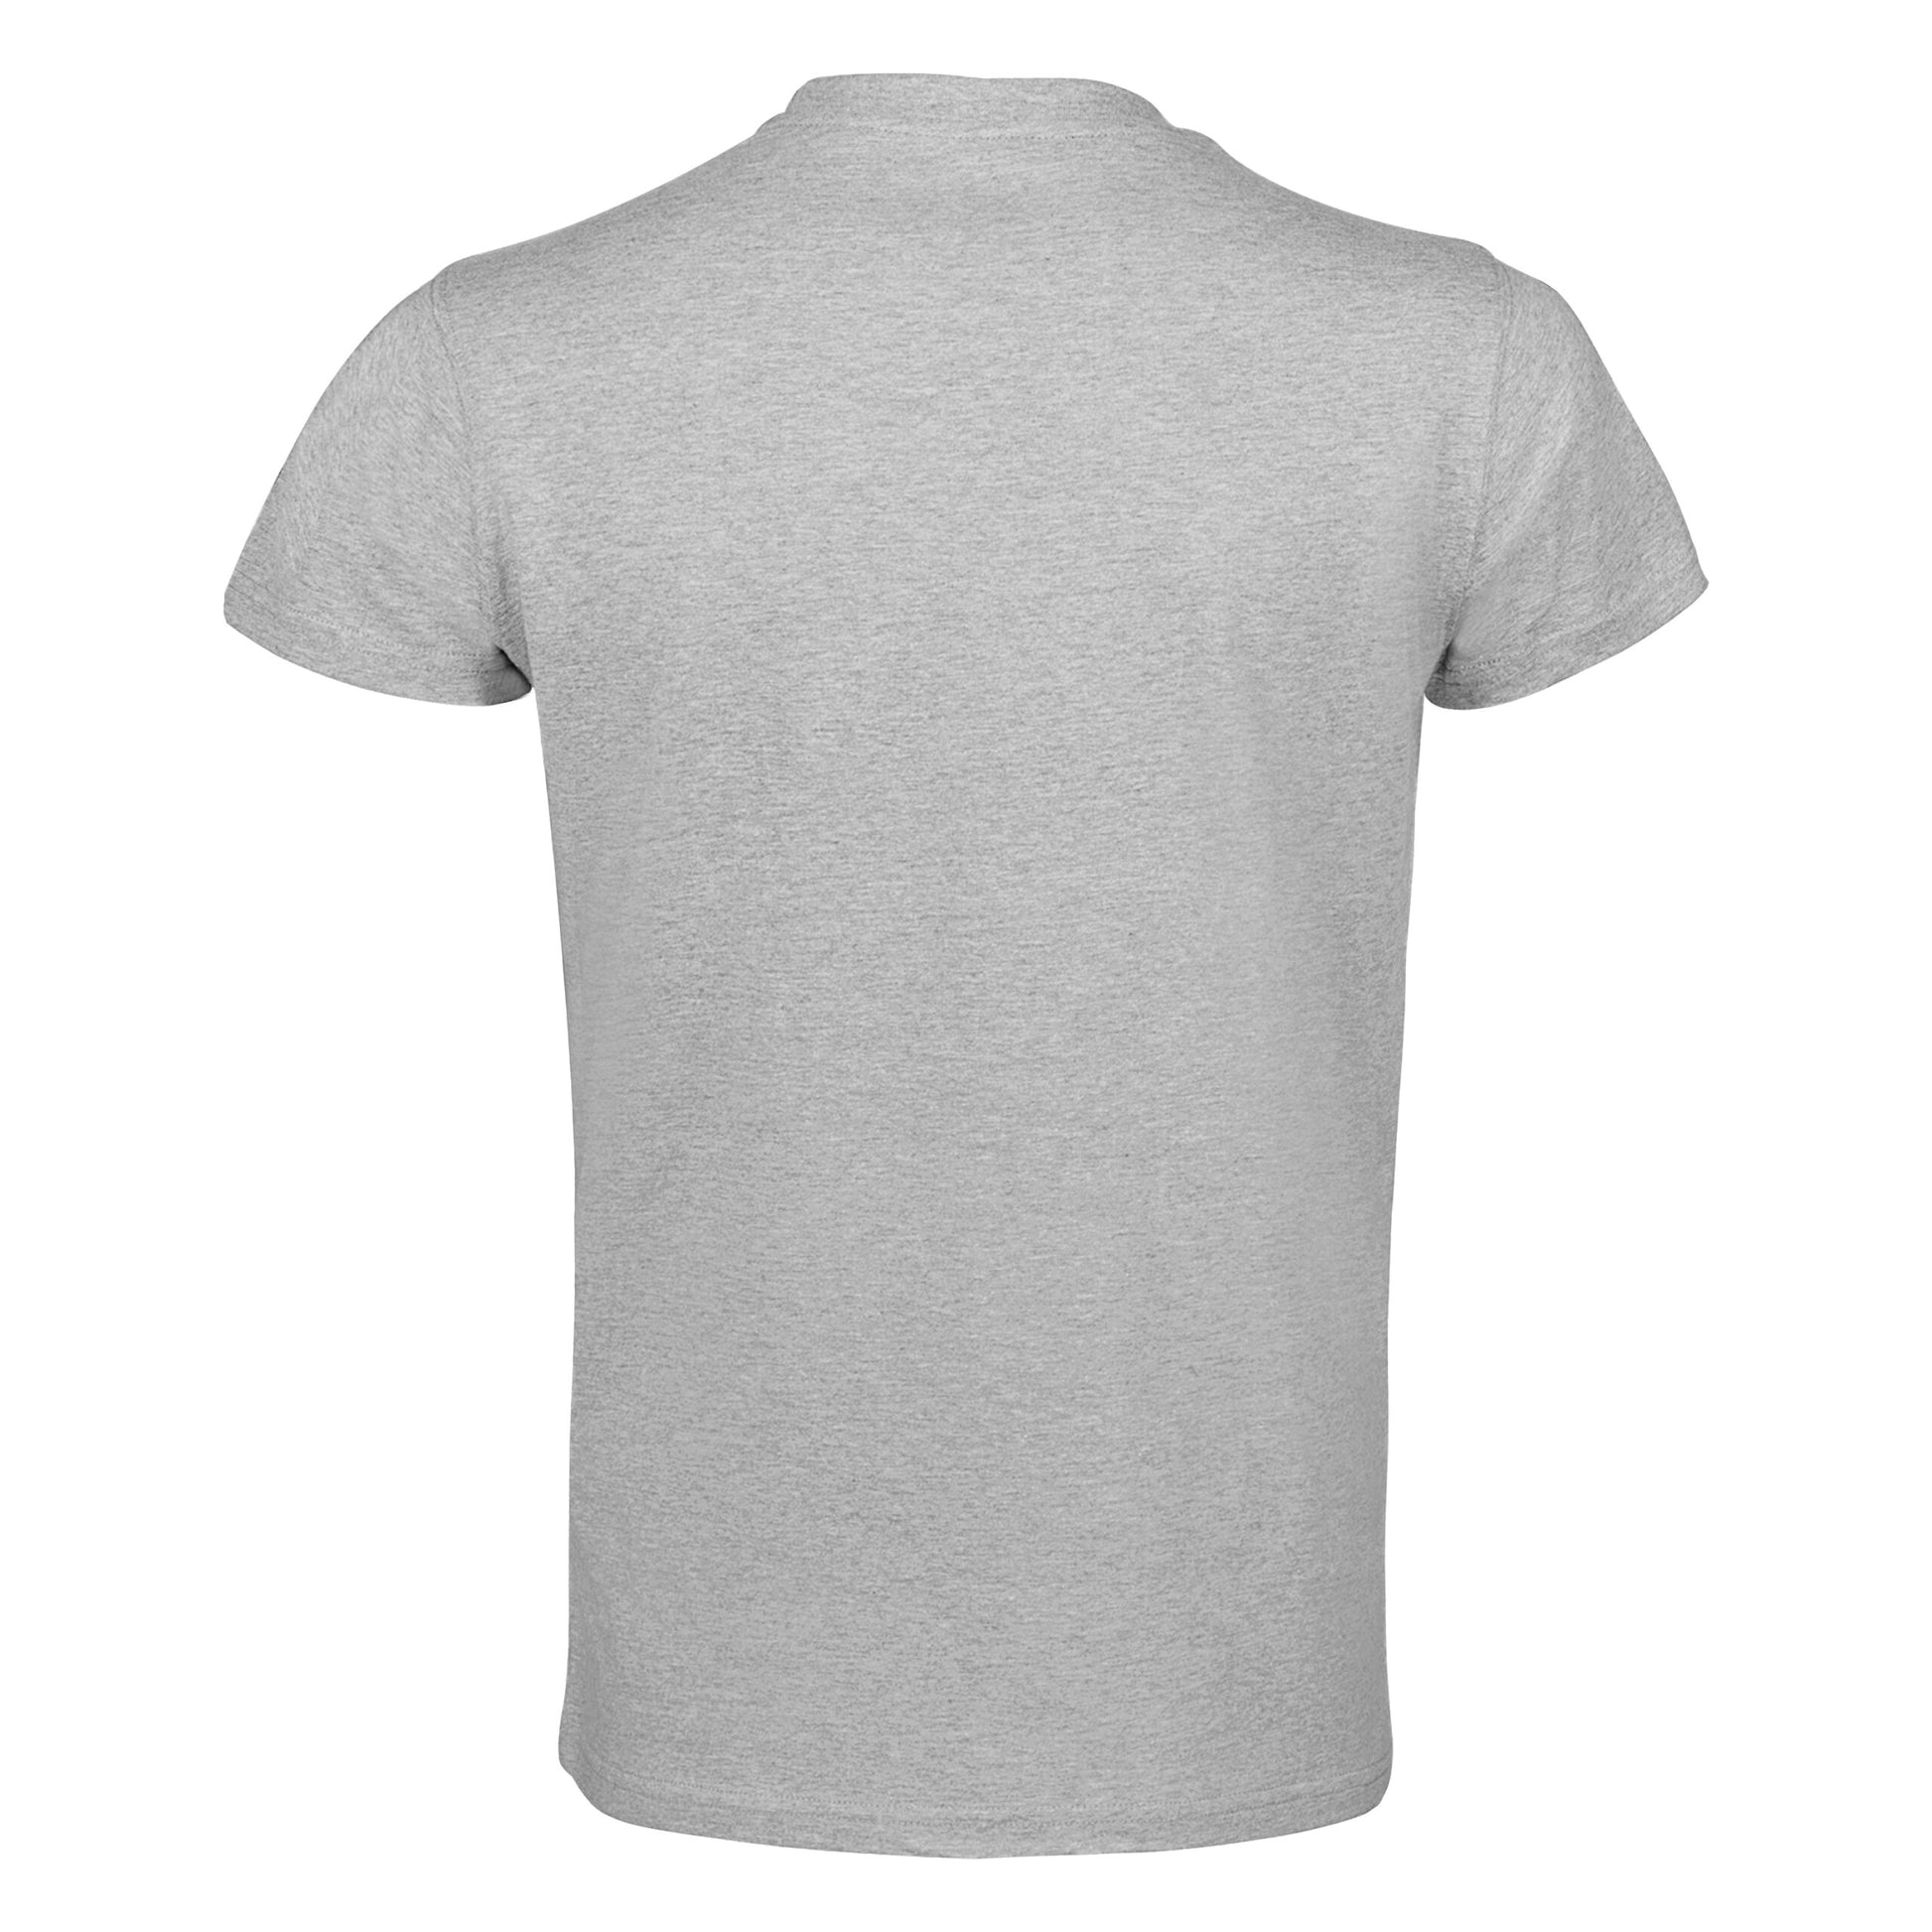 Clts21 B Adidas Boxing T Shirt Grey 04